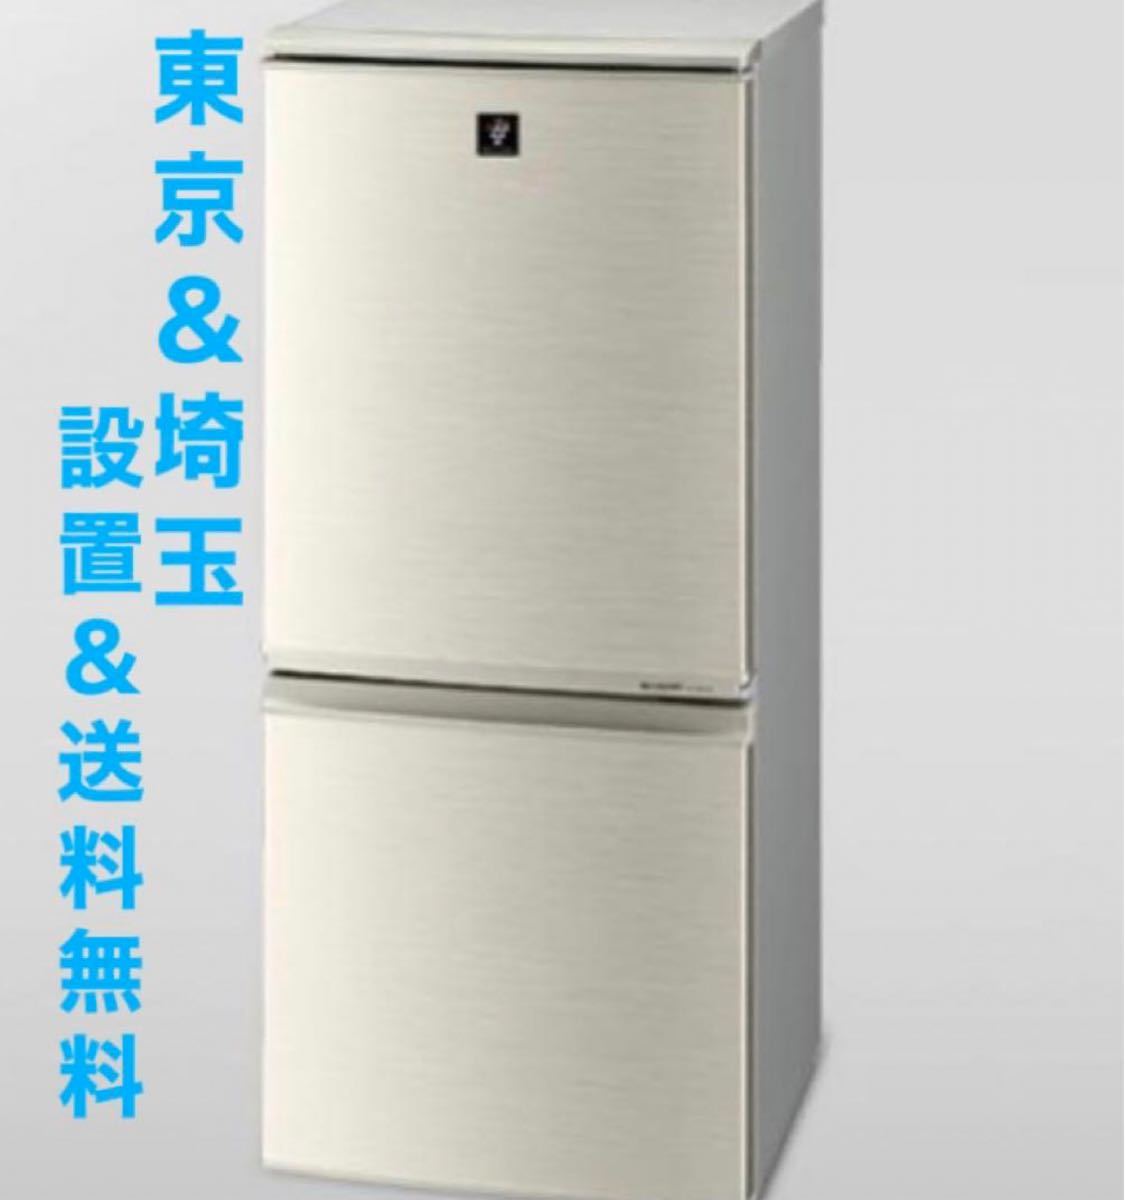 シャープ冷蔵庫 2ドア137ℓ - 冷蔵庫・冷凍庫